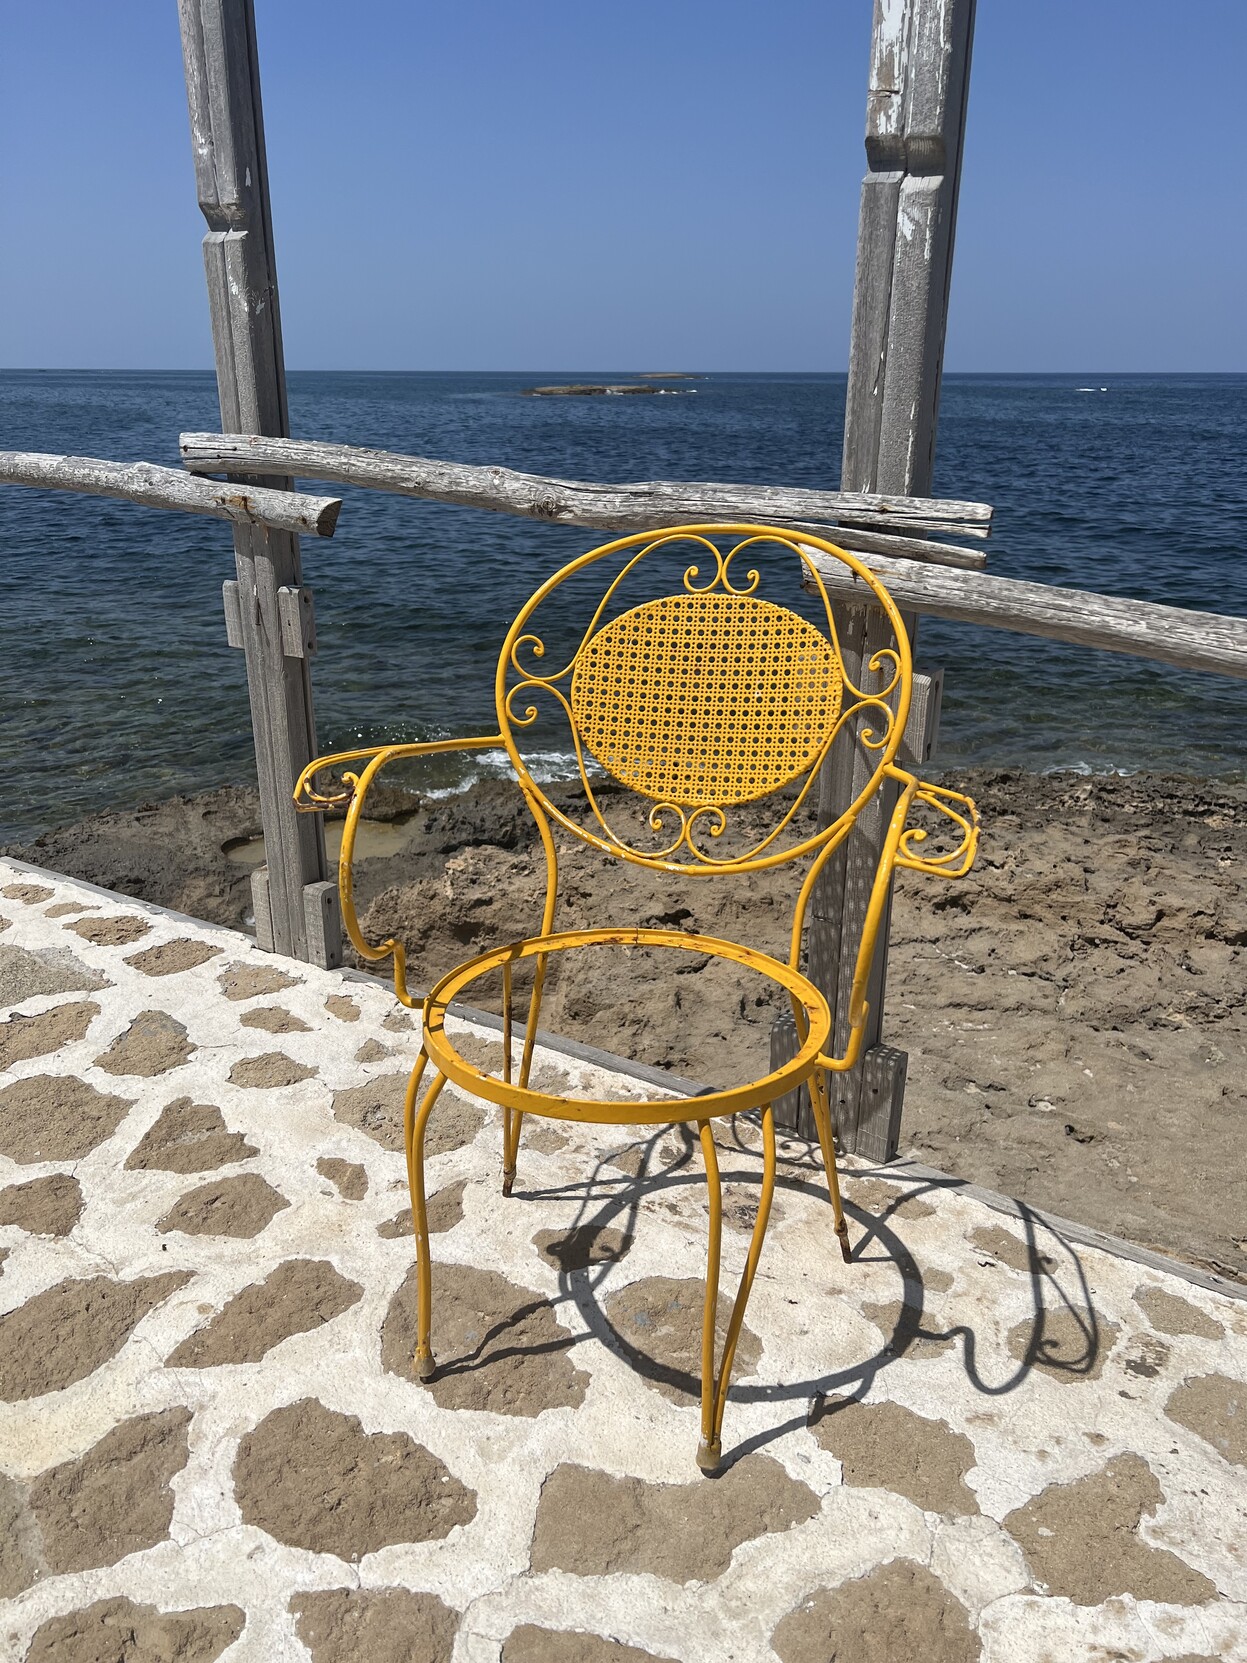 Meeresstrand. Davor Pflaster mit einigen Holzpfählen Richtung Sand. Auf dem Pflaster steht ein gelber Metallstuhl dem die Sitzfläche fehlt. 